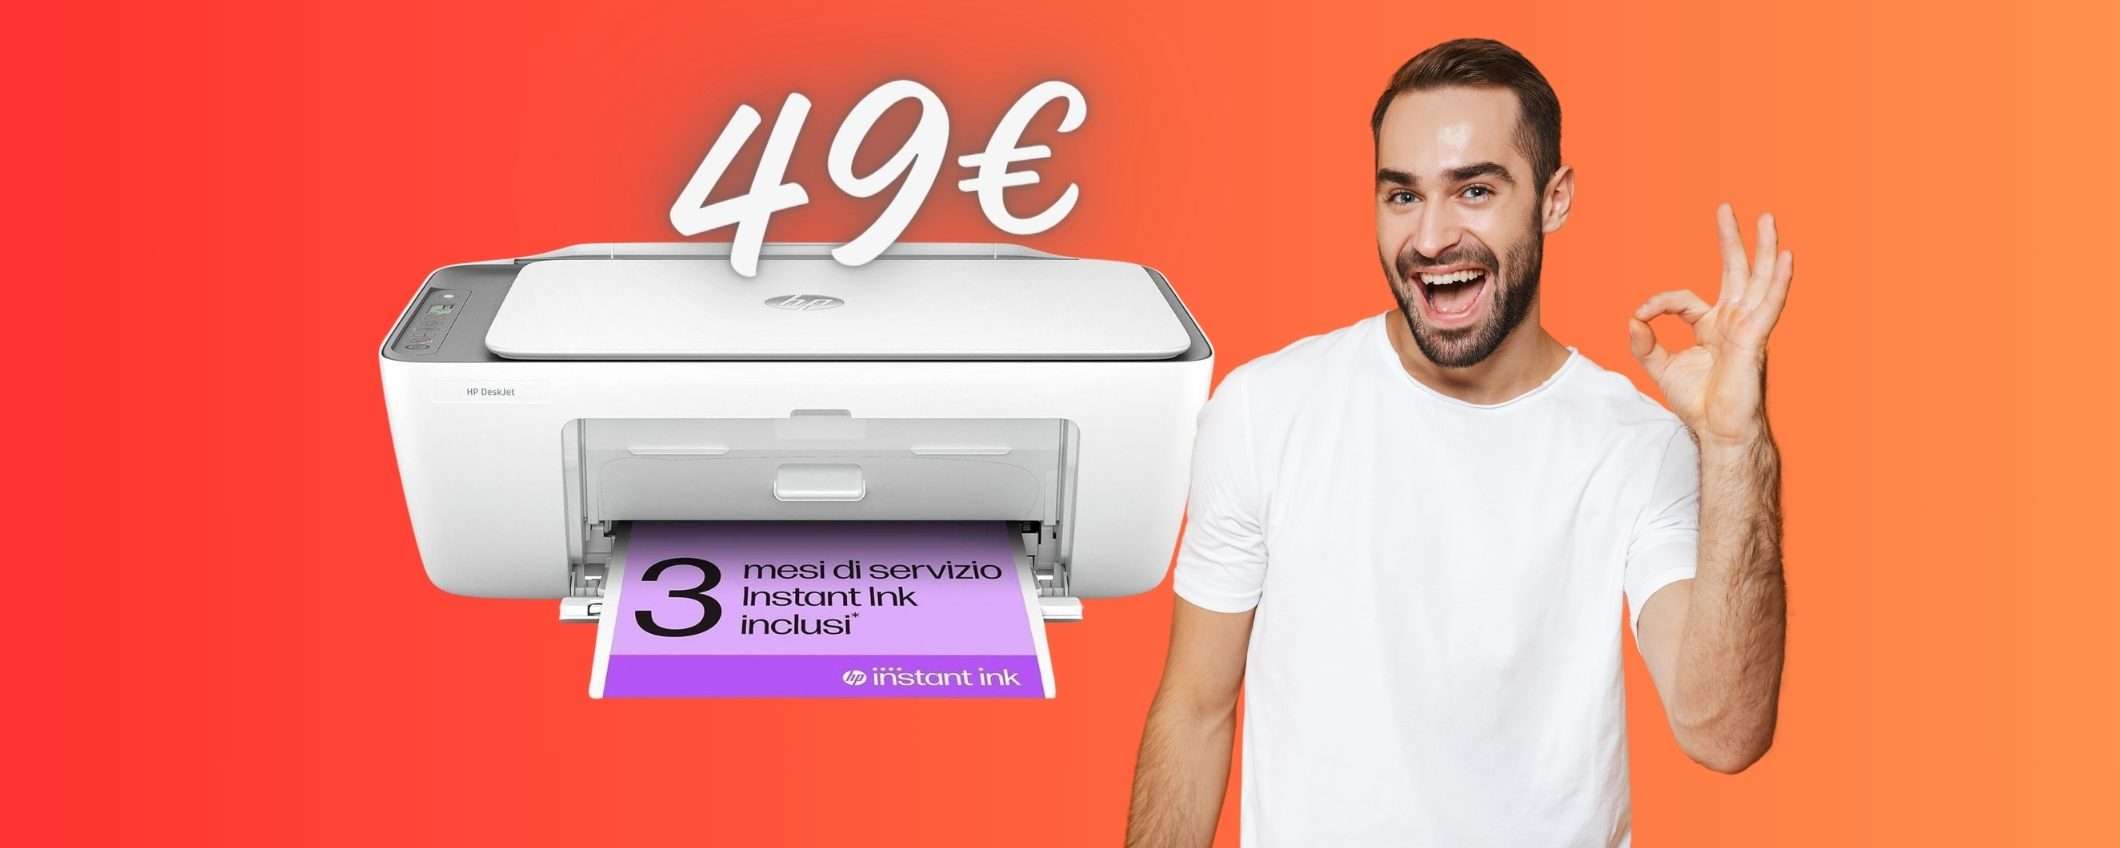 Stampante HP DeskJet 2820e tua con 49€ appena, super OCCASIONE